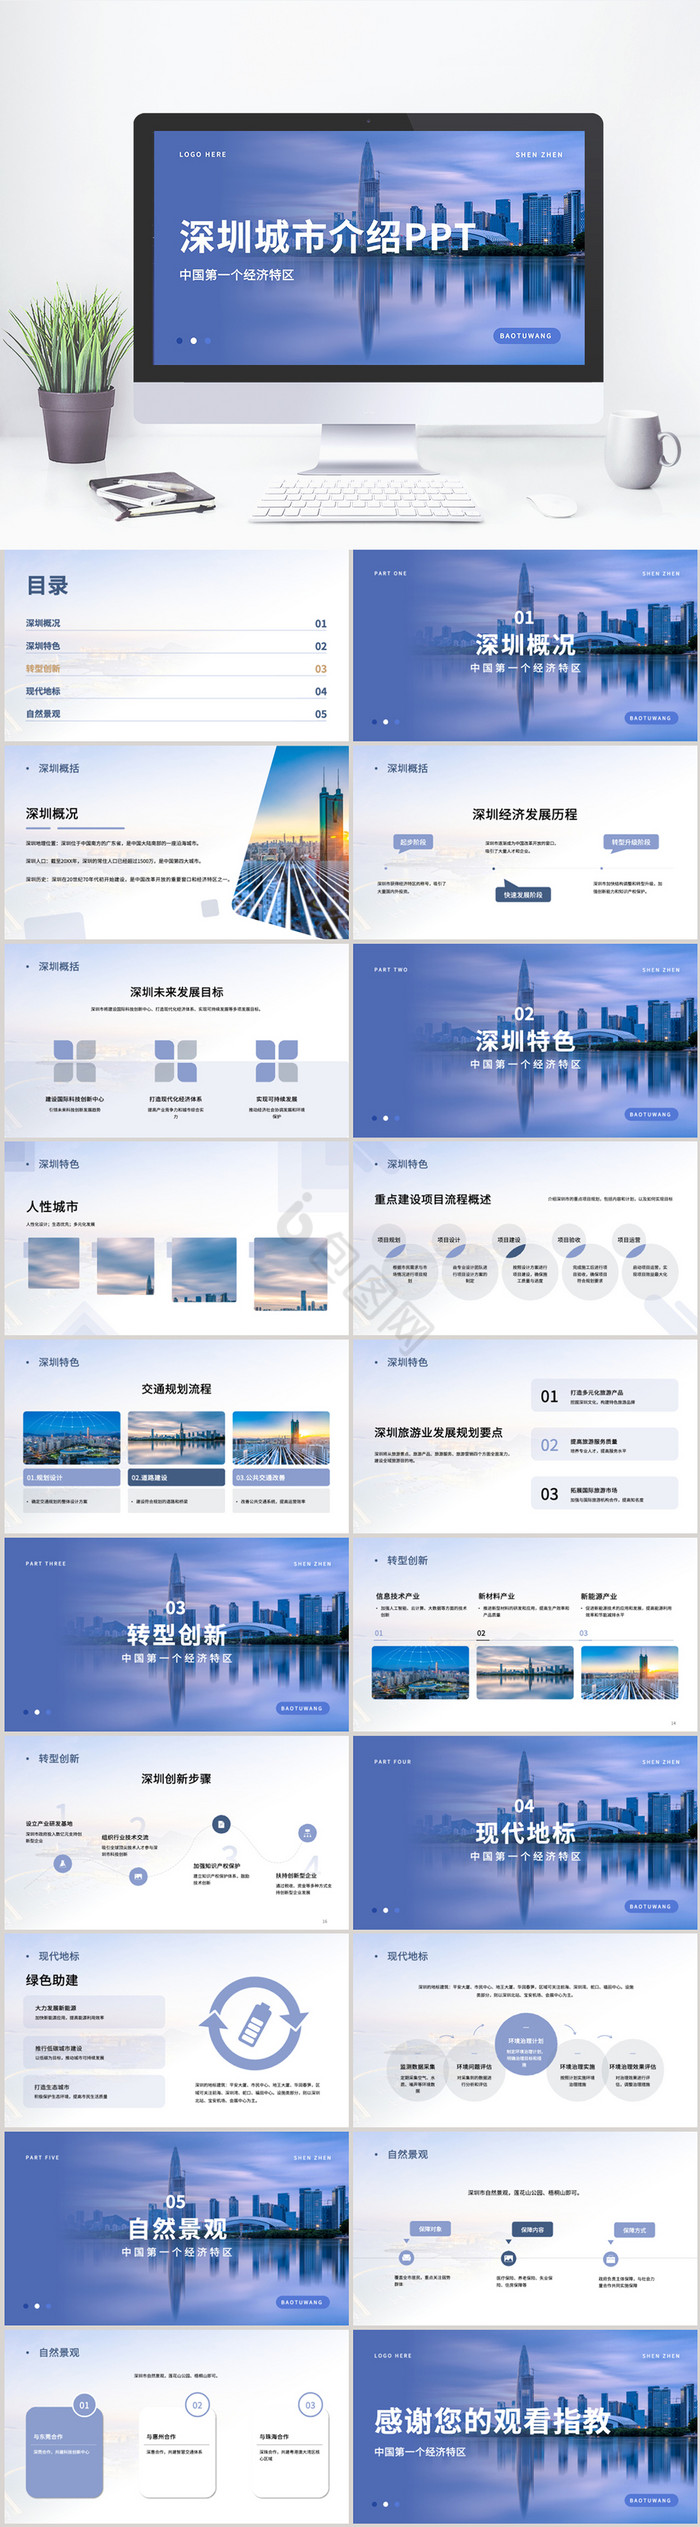 蓝色深圳旅游城市介绍PPT模板